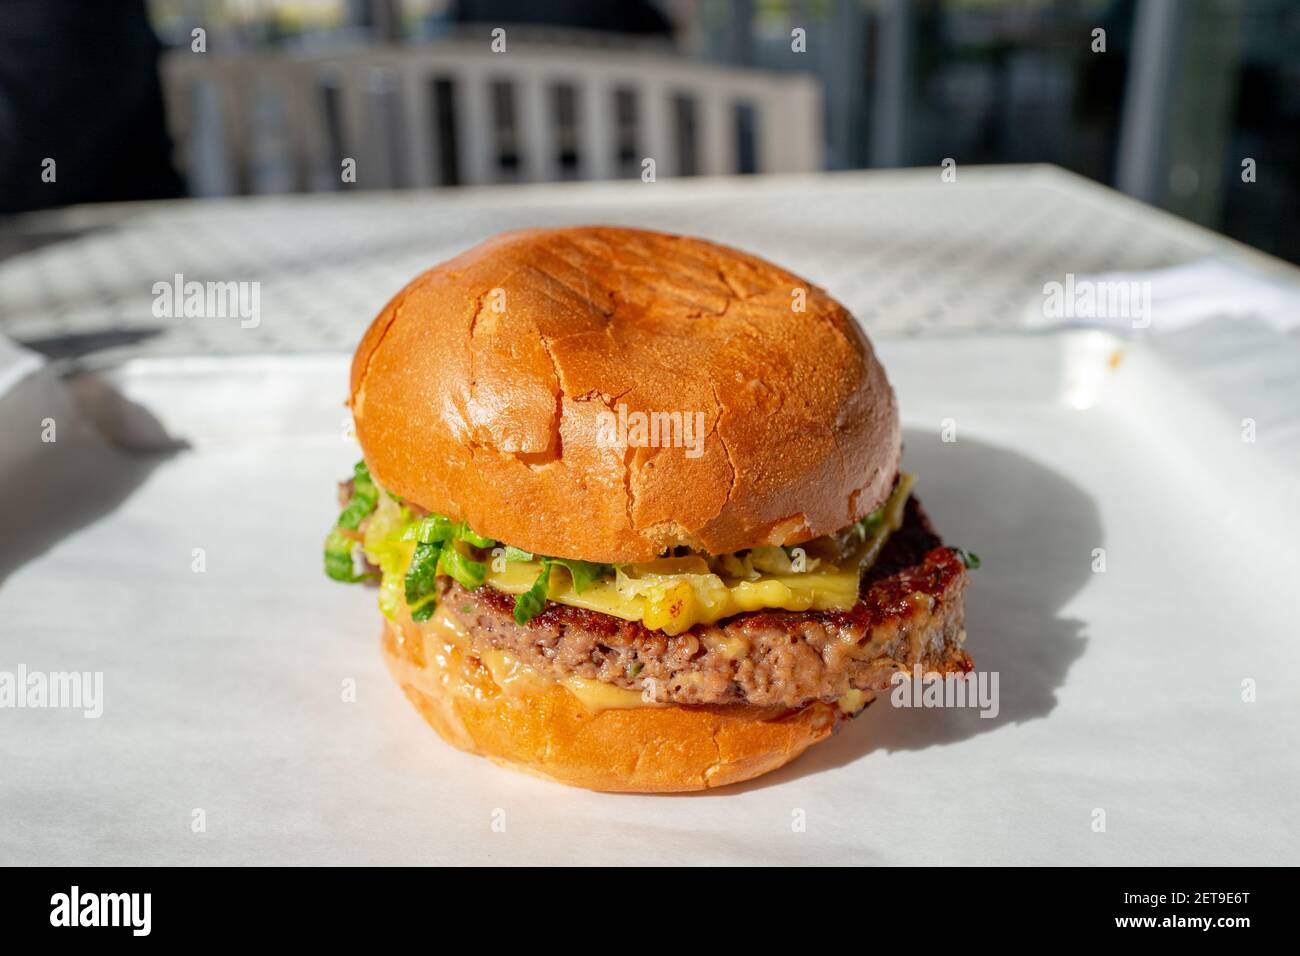 Gros plan en grand angle d'un cheeseburger, avec de la laitue et un petit pain, posé sur un plateau blanc, 18 février 2021. () Banque D'Images